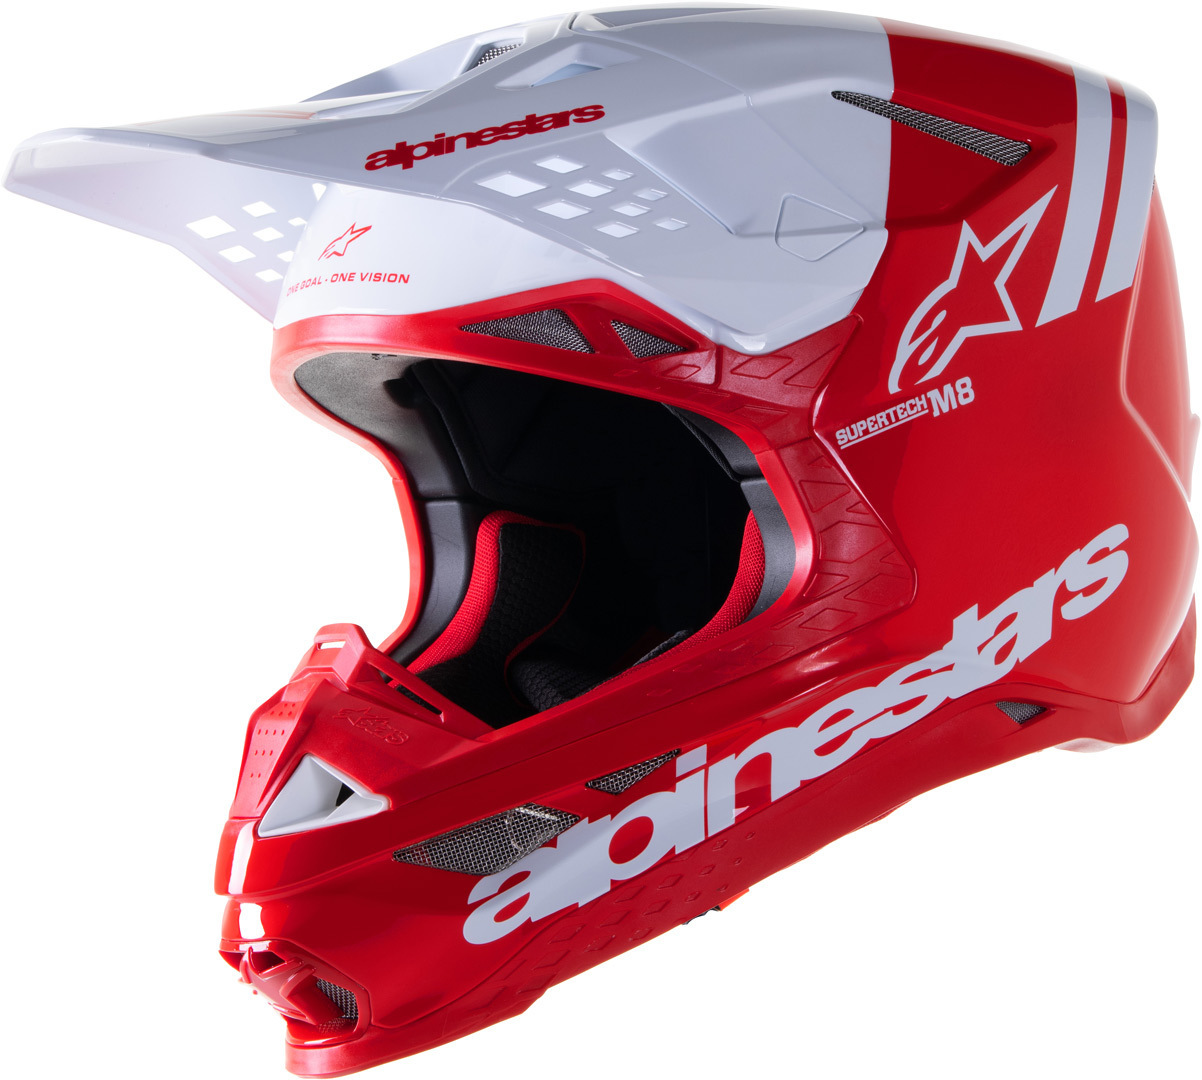 Alpinestars Supertech M8 Radium 2 Motocross Helmet, white-red, Size S, white-red, Size S